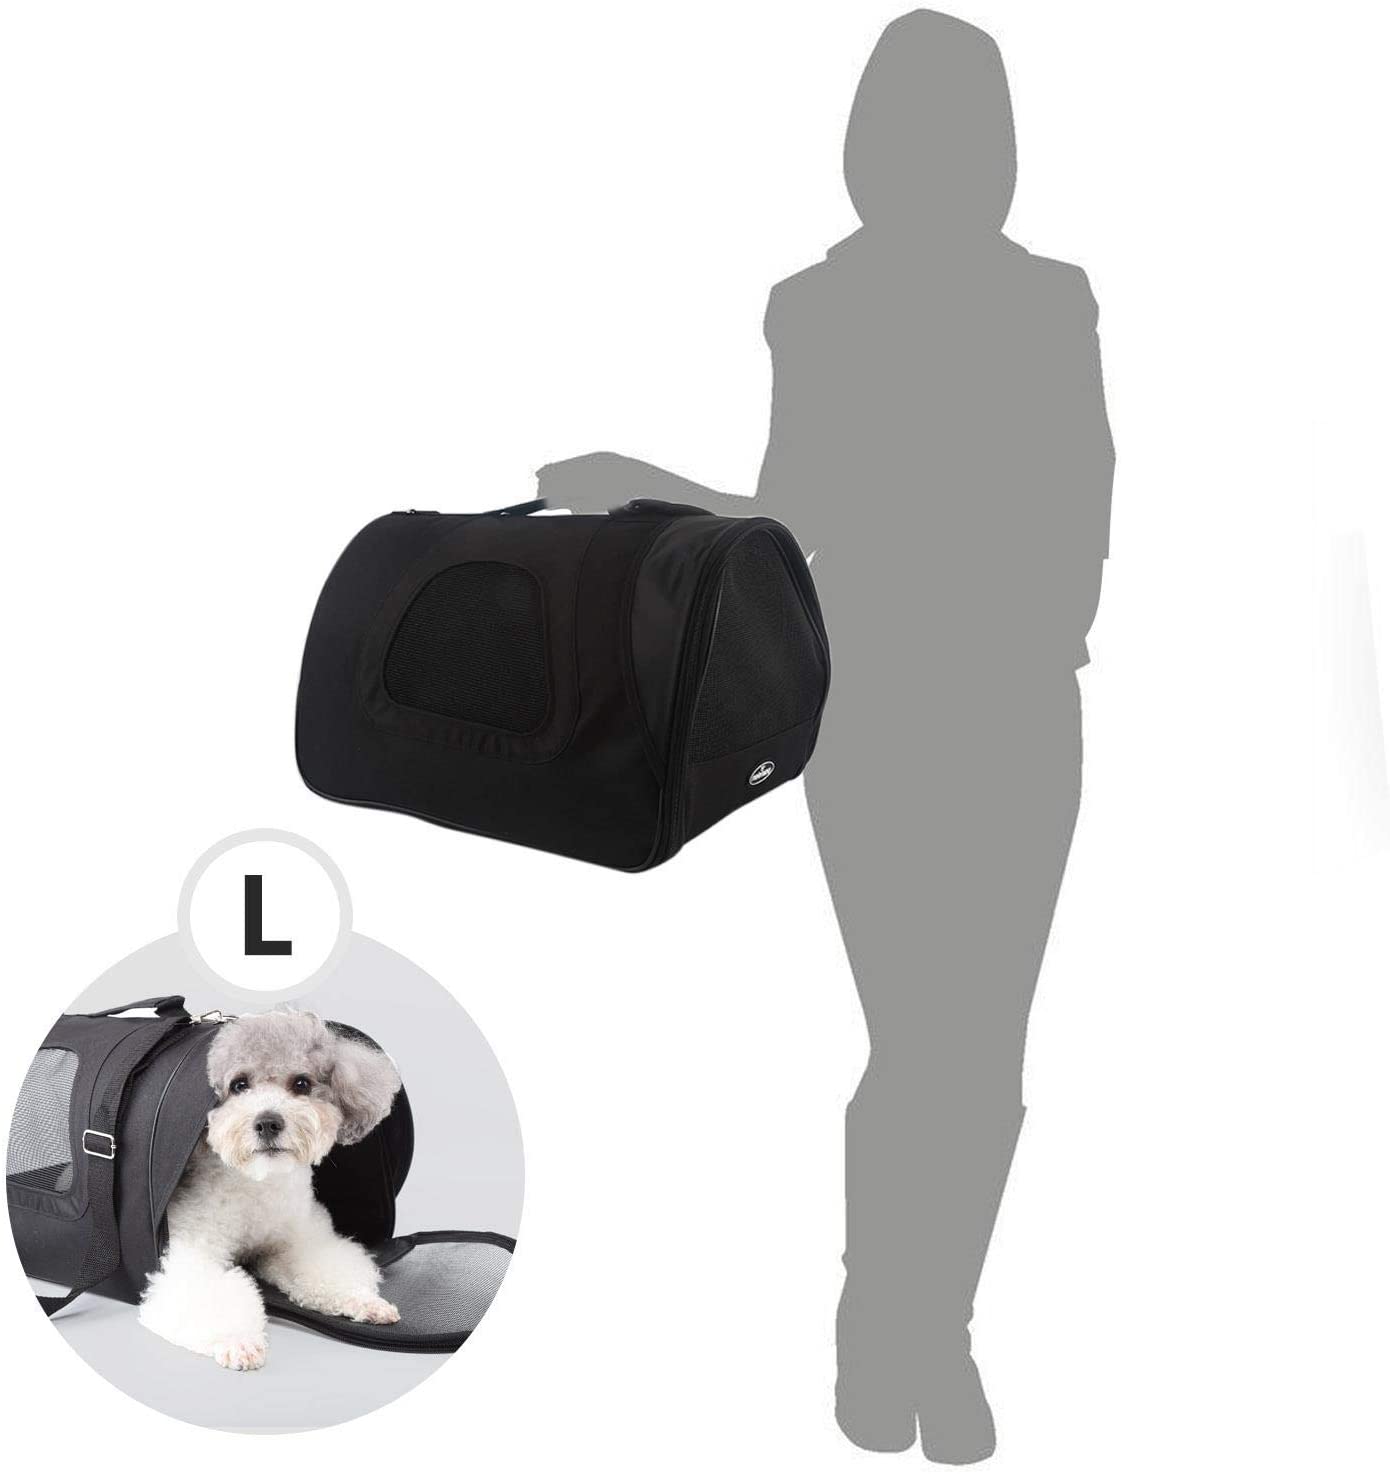  Nobleza - Bolso Transportín de Viaje Plegable para Perros y Gatos, Tela Oxford, Color Negro, Talla L, (45 * 28 * 29) cm 